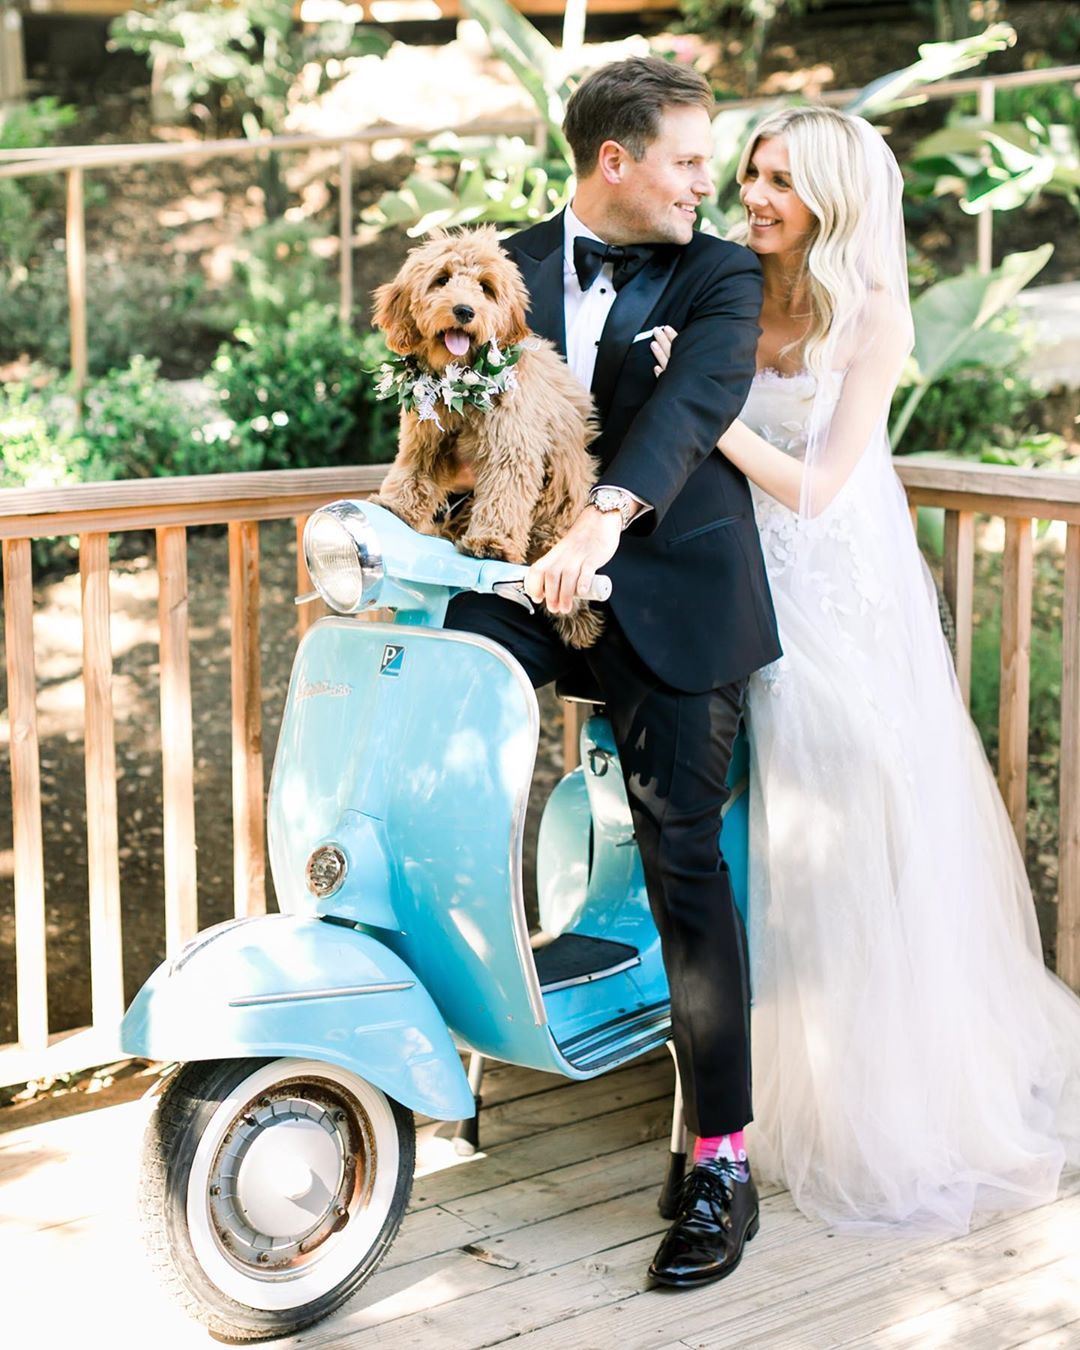 Dog at wedding photoshoot